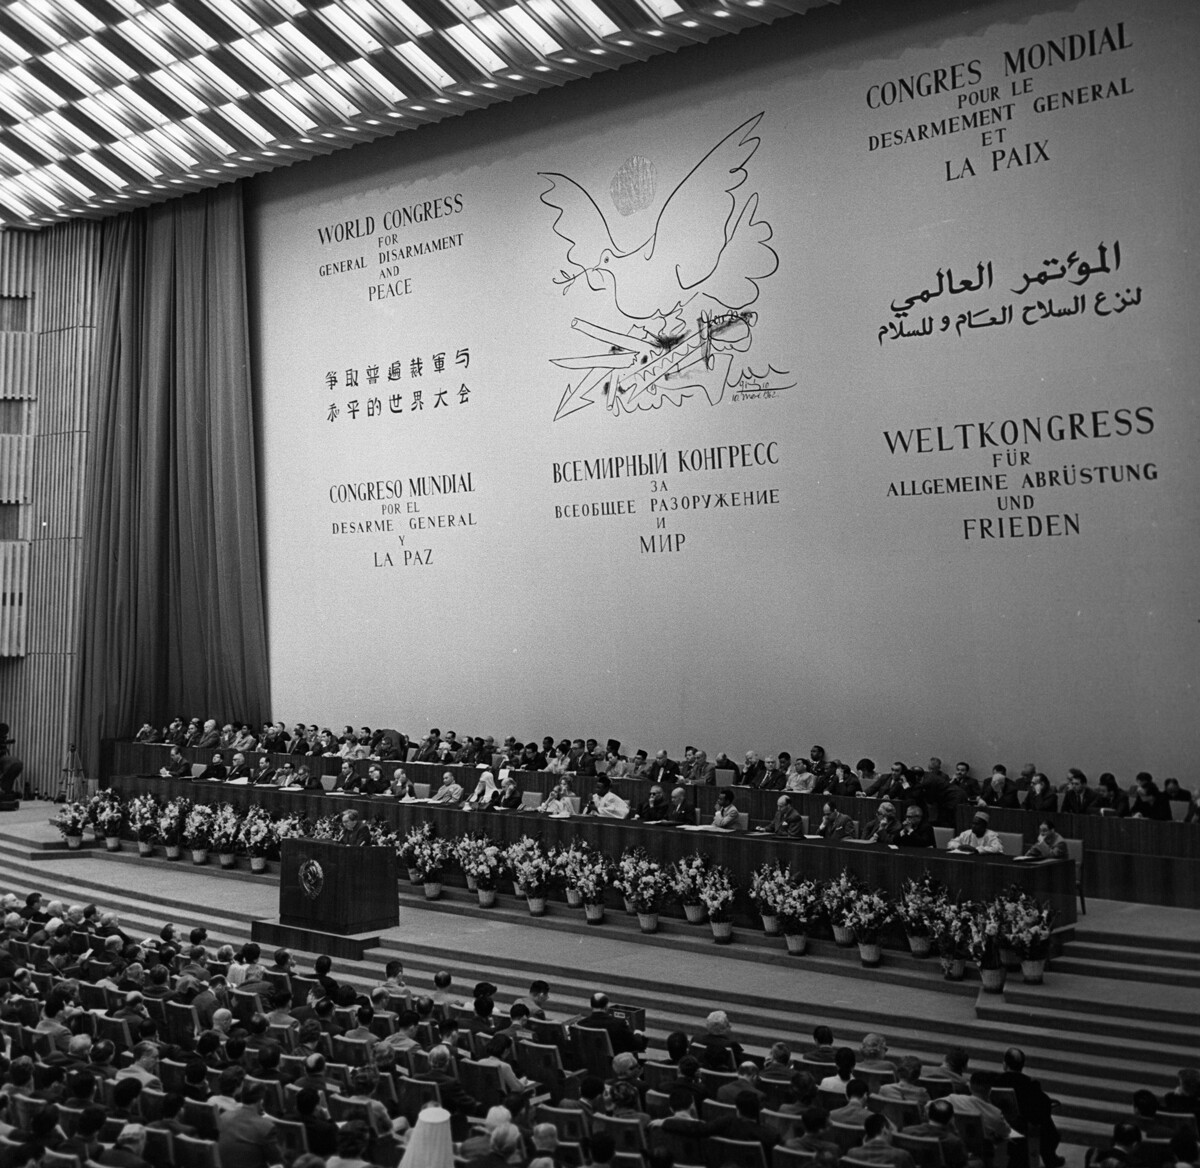 Inauguración del Congreso Mundial para el Desarme Global y la Paz